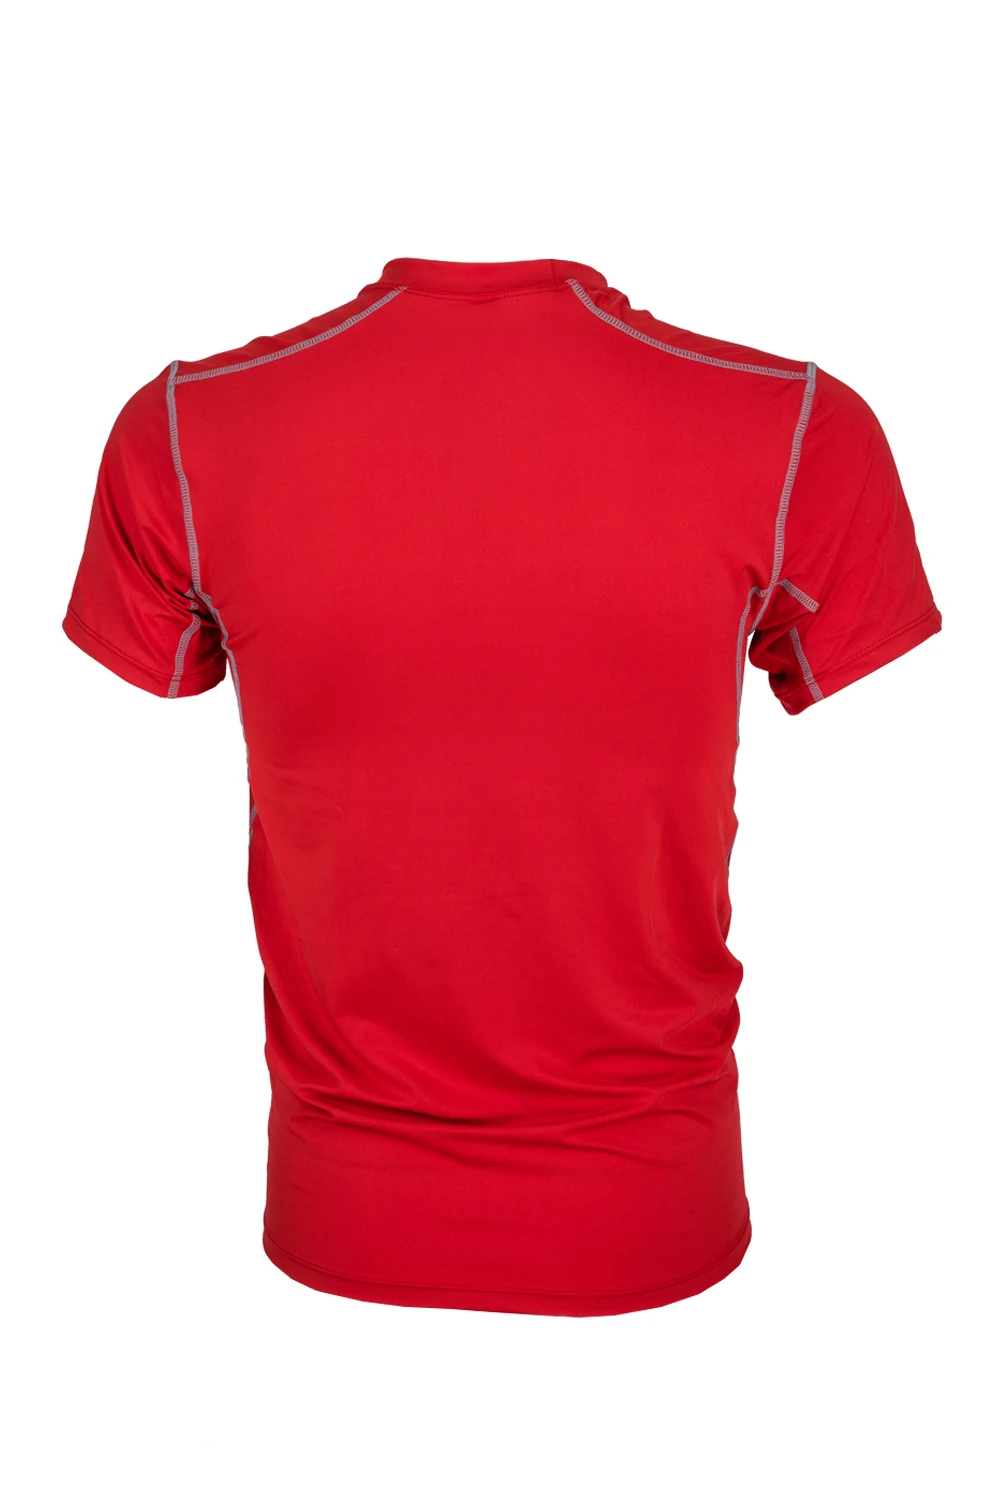 Размер S мужские спортивные компресионные базовые слои под Топы Рубашки Skins gear одежда спортивные термо футболки топы высокая гибкость-красный